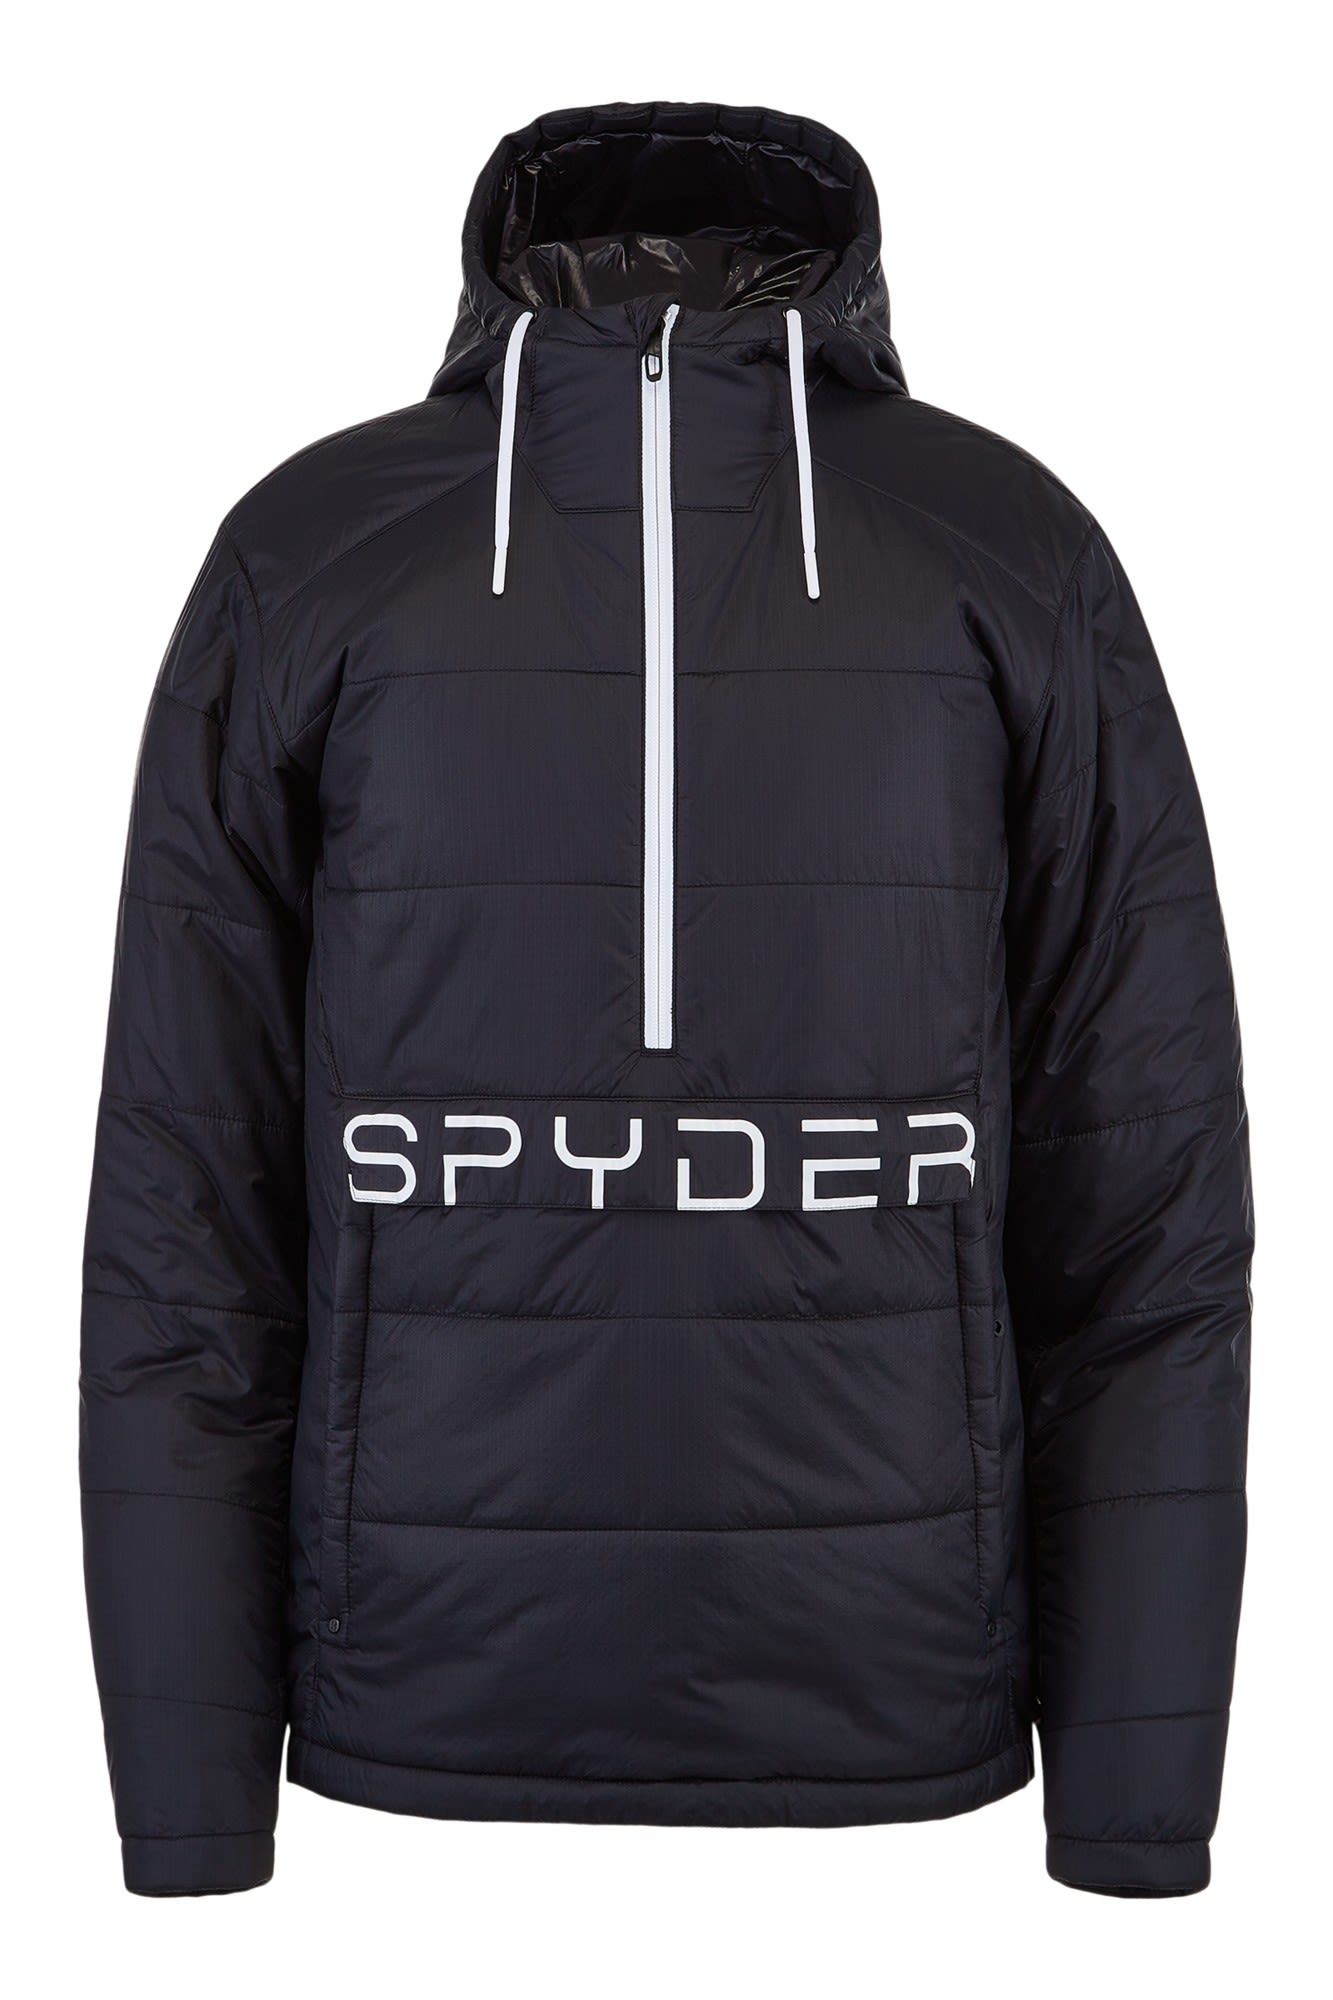 Spyder Glissade Anorak Jacket Schwarz- Male Daunen Anoraks- Grsse S - Farbe Black unter Spyder